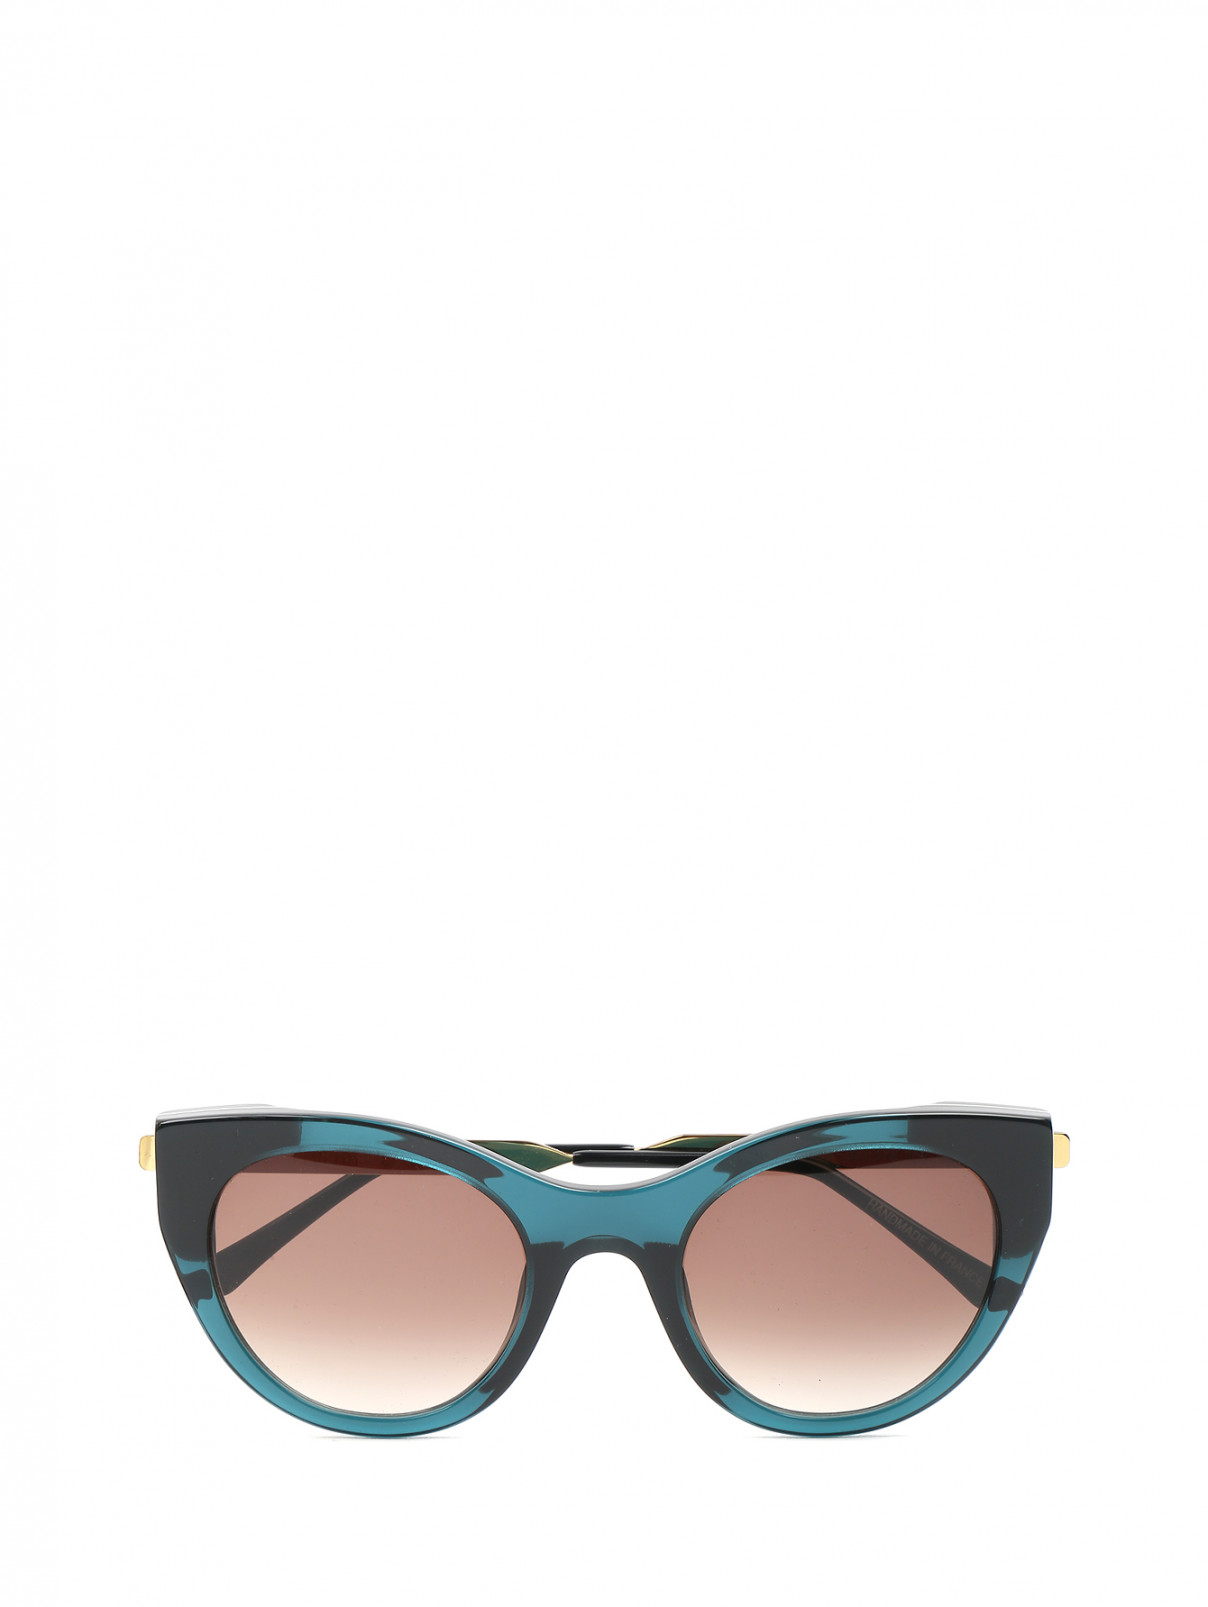 Cолнцезащитные очки в пластиковой оправе Thierry Lasry  –  Общий вид  – Цвет:  Зеленый